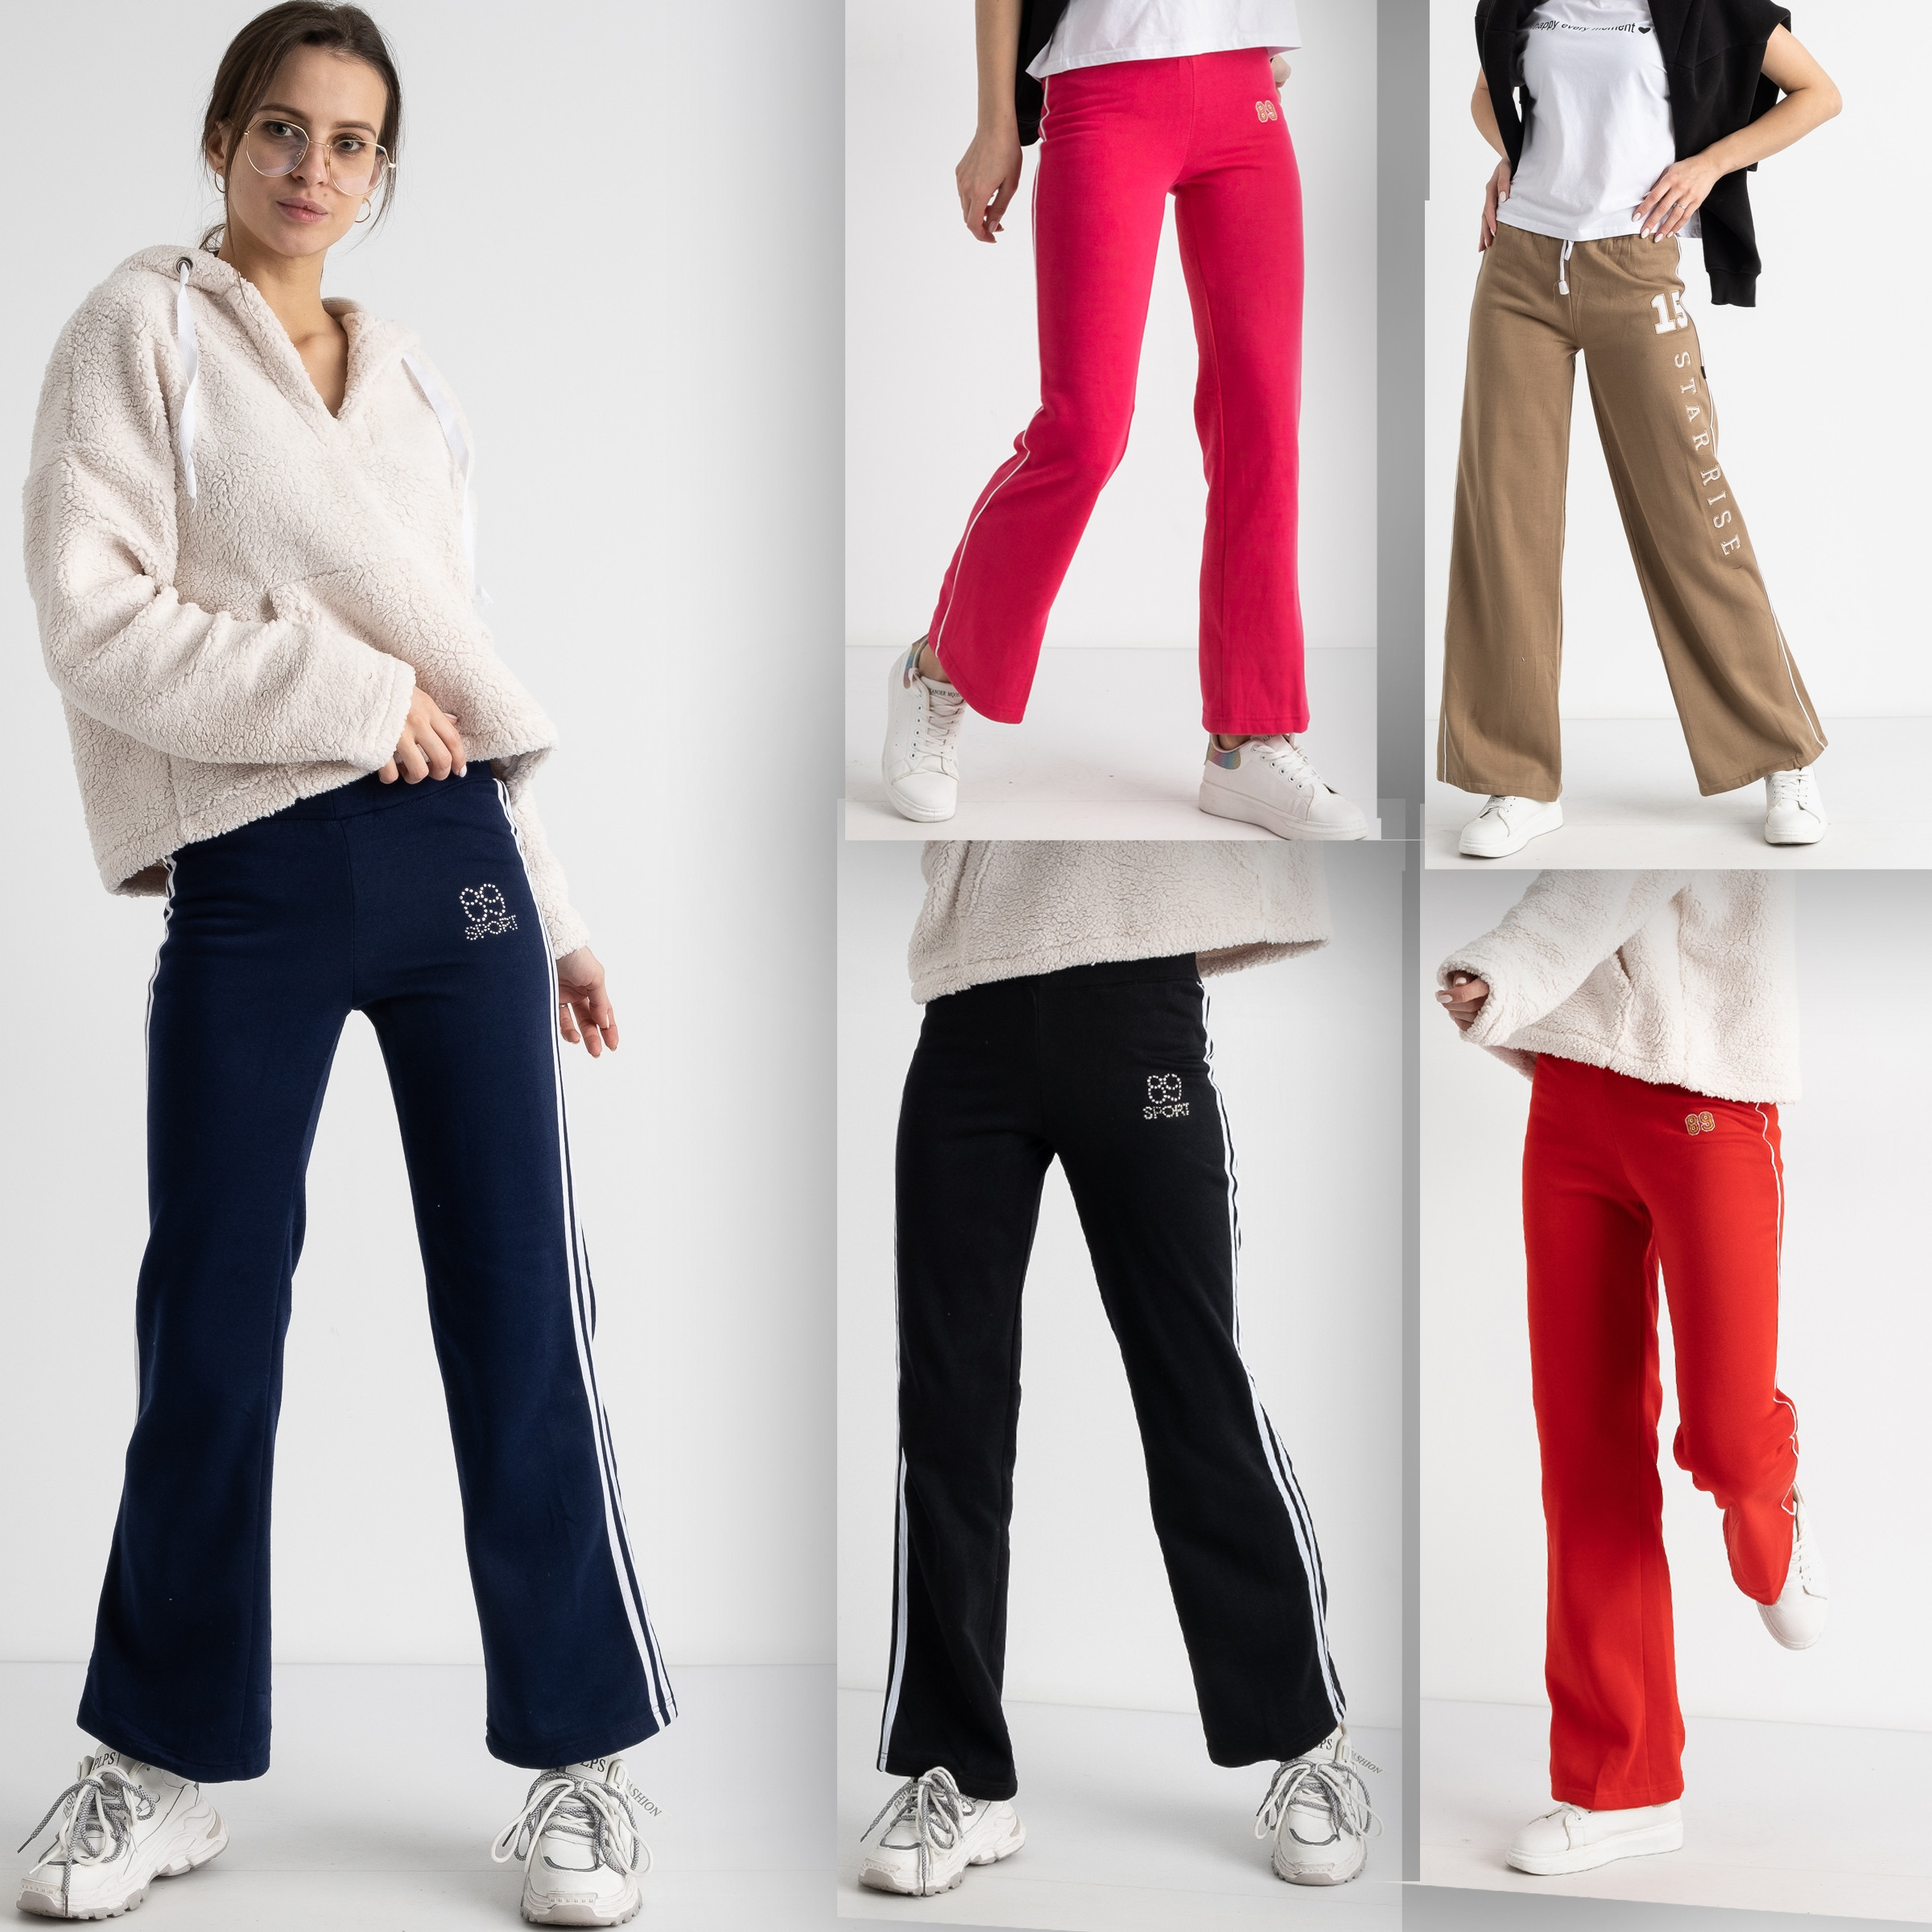 0234-1 спортивные штаны прямые женские на флисе микс моделей и цветов (5 ед. размеры: S-L)